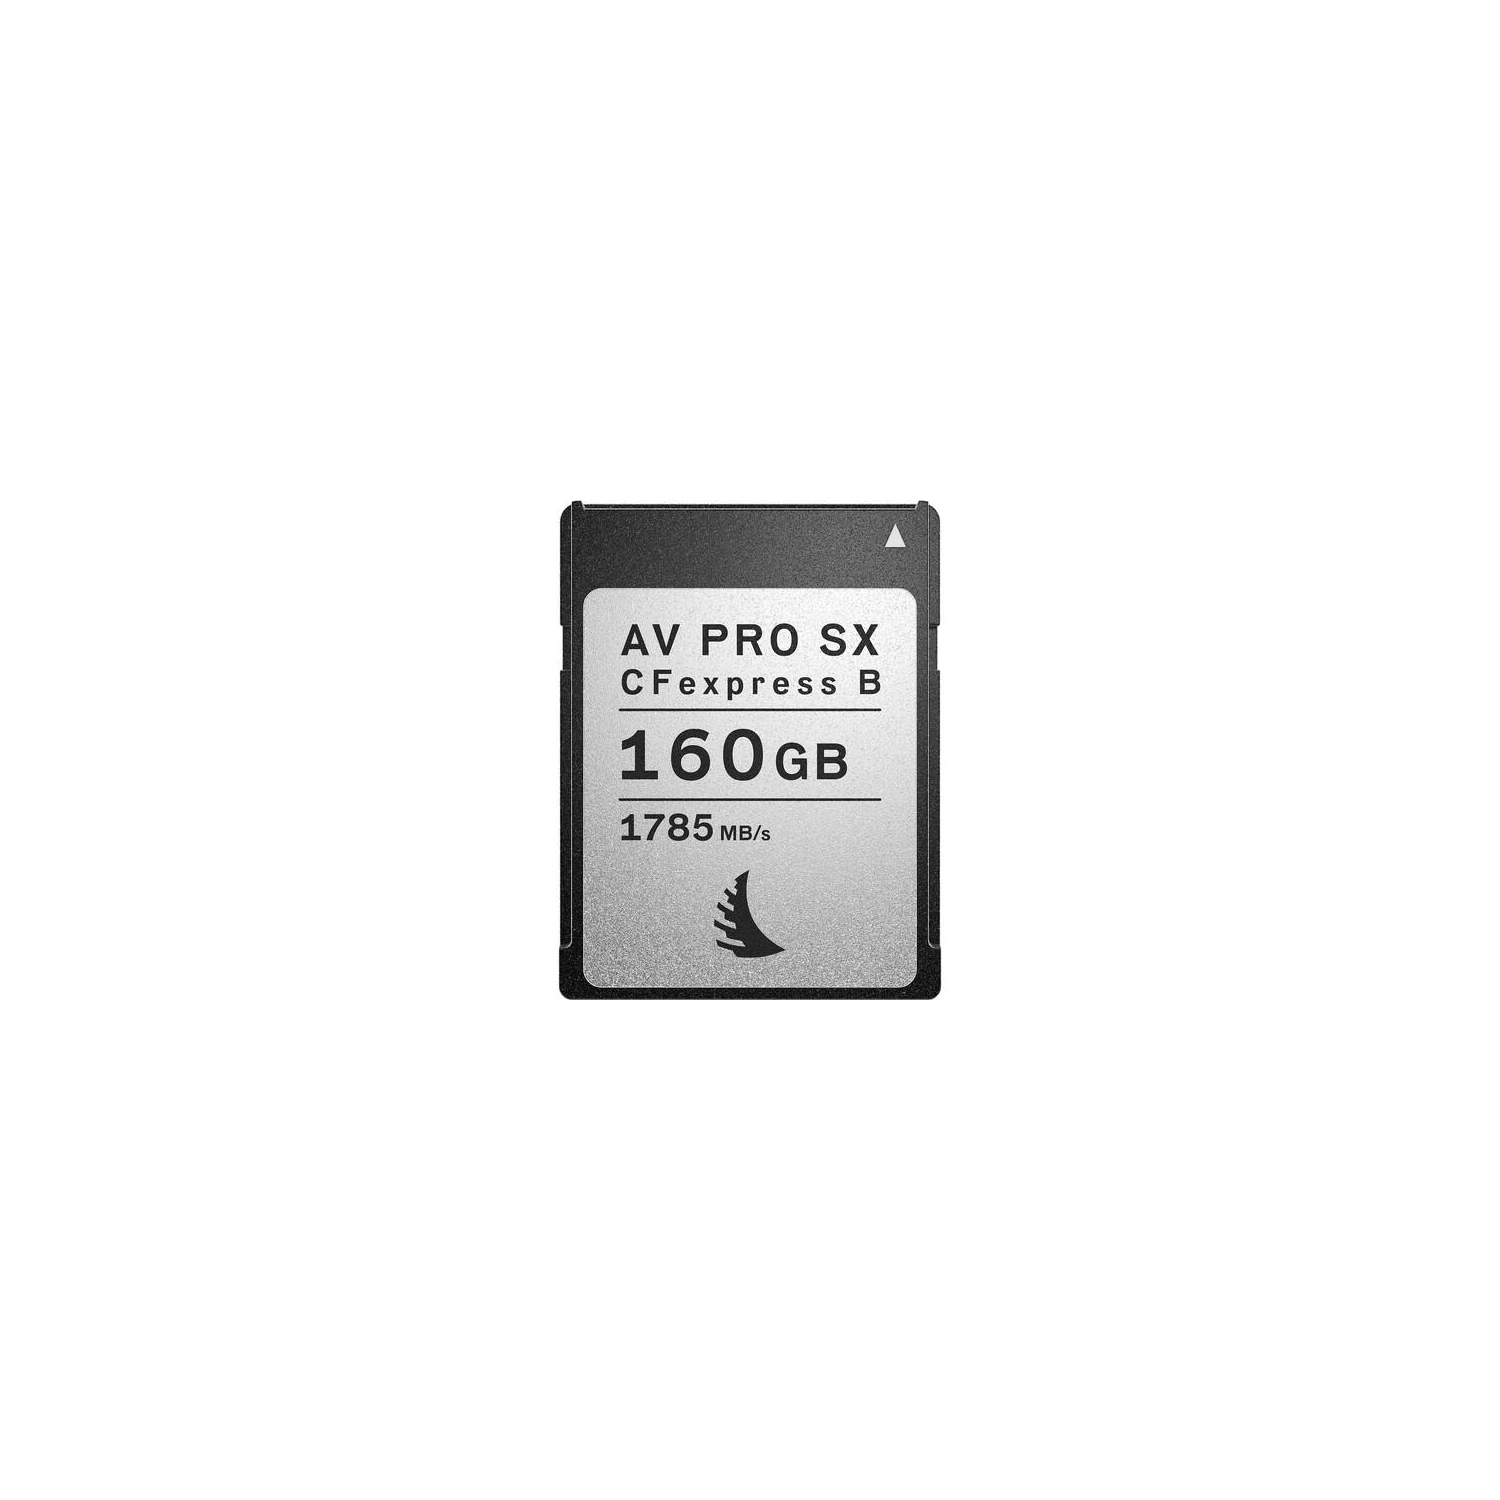 Angelbird 160GB AV PRO CFexpress 2.0 Type B SX Memory Card